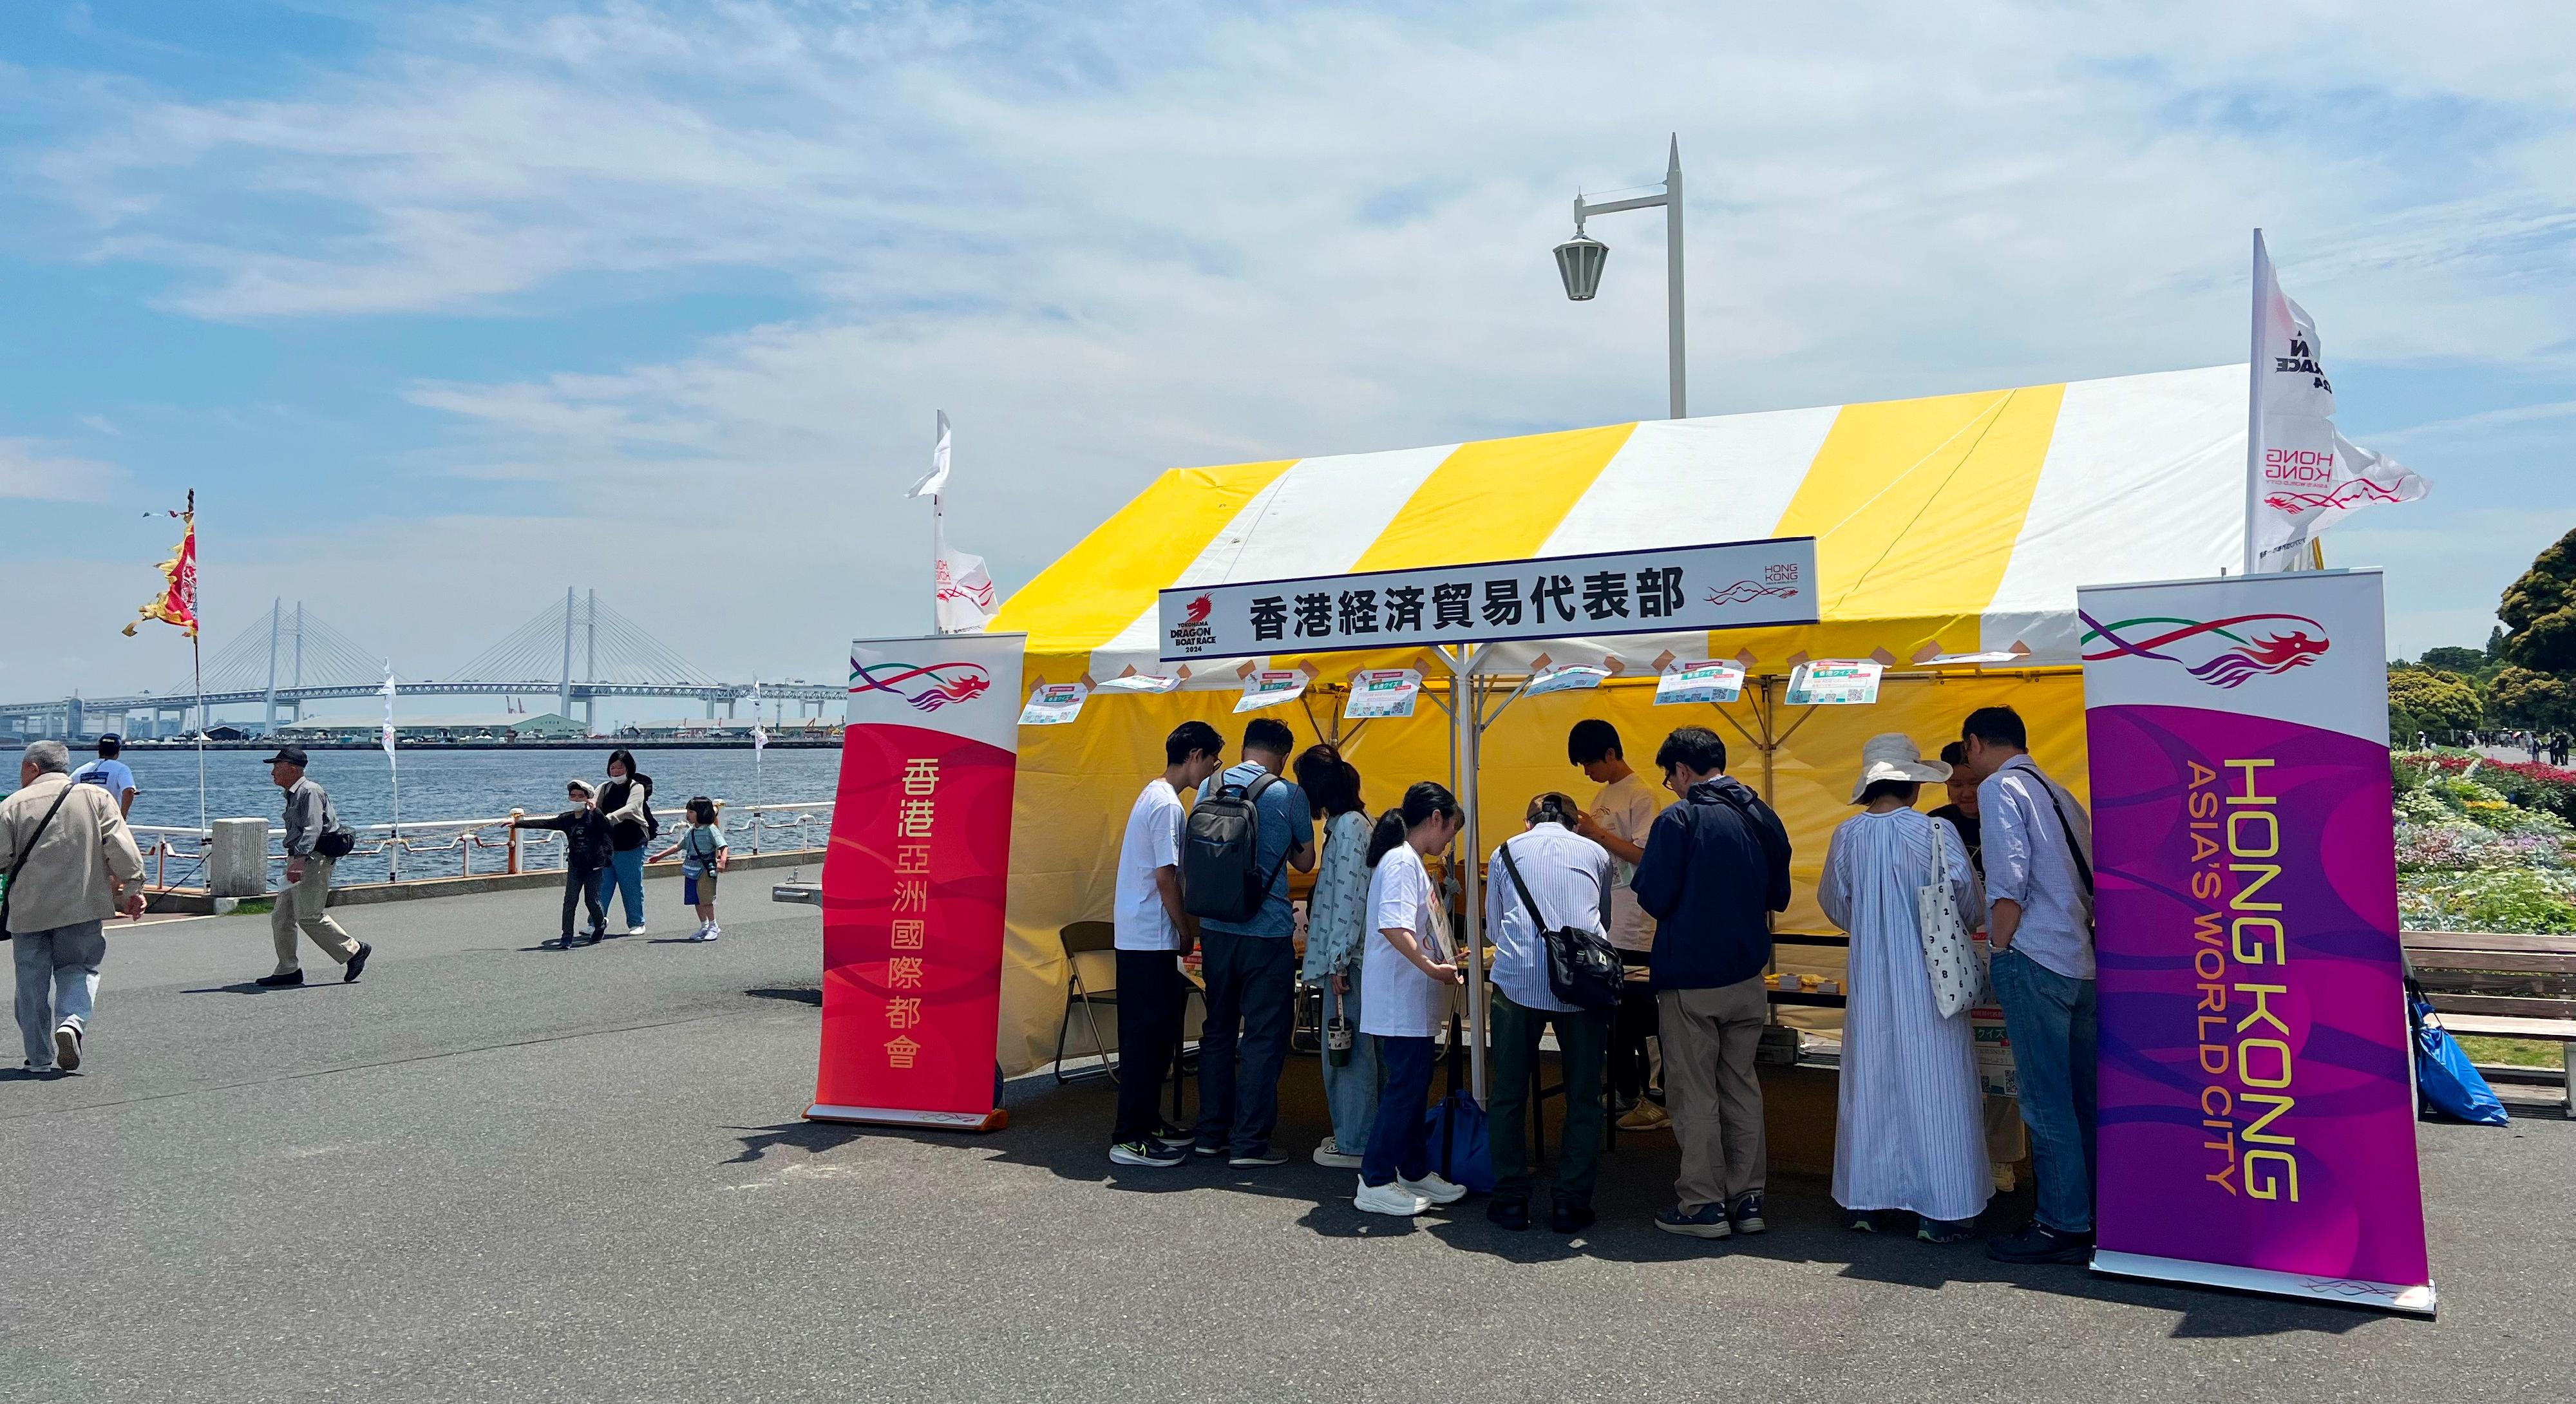 香港杯龙舟赛今日（六月二日）在日本横滨山下公园海旁举行。图示游人参观由香港驻东京经济贸易办事处设立的摊位。